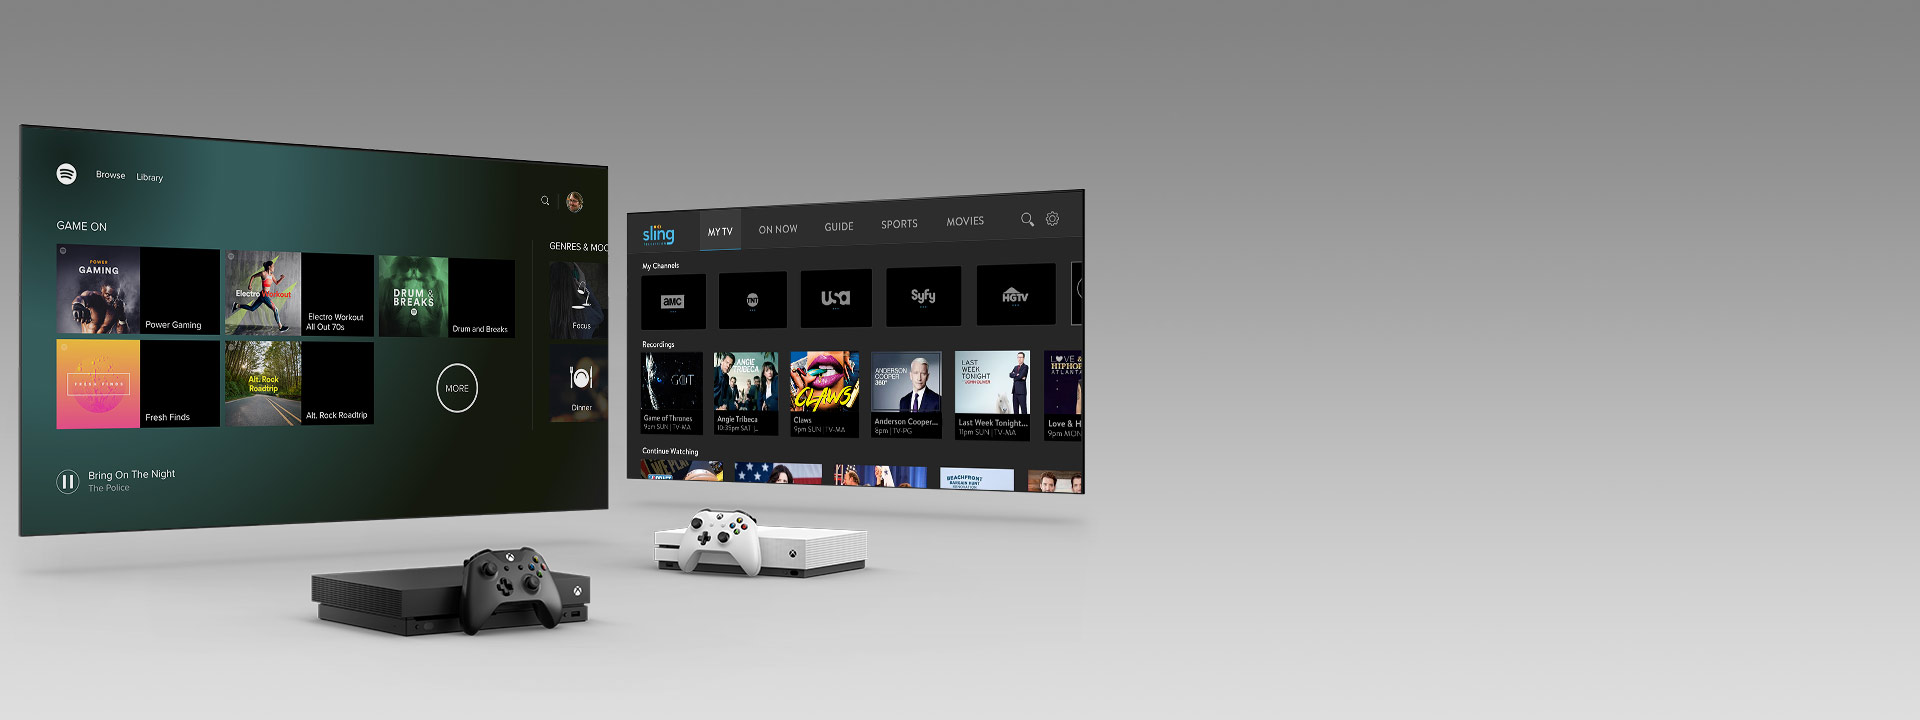 Xbox Series X и Series S с геймпадами перед двумя экранами телевизоров, на которых открыты пользовательские интерфейсы приложений.